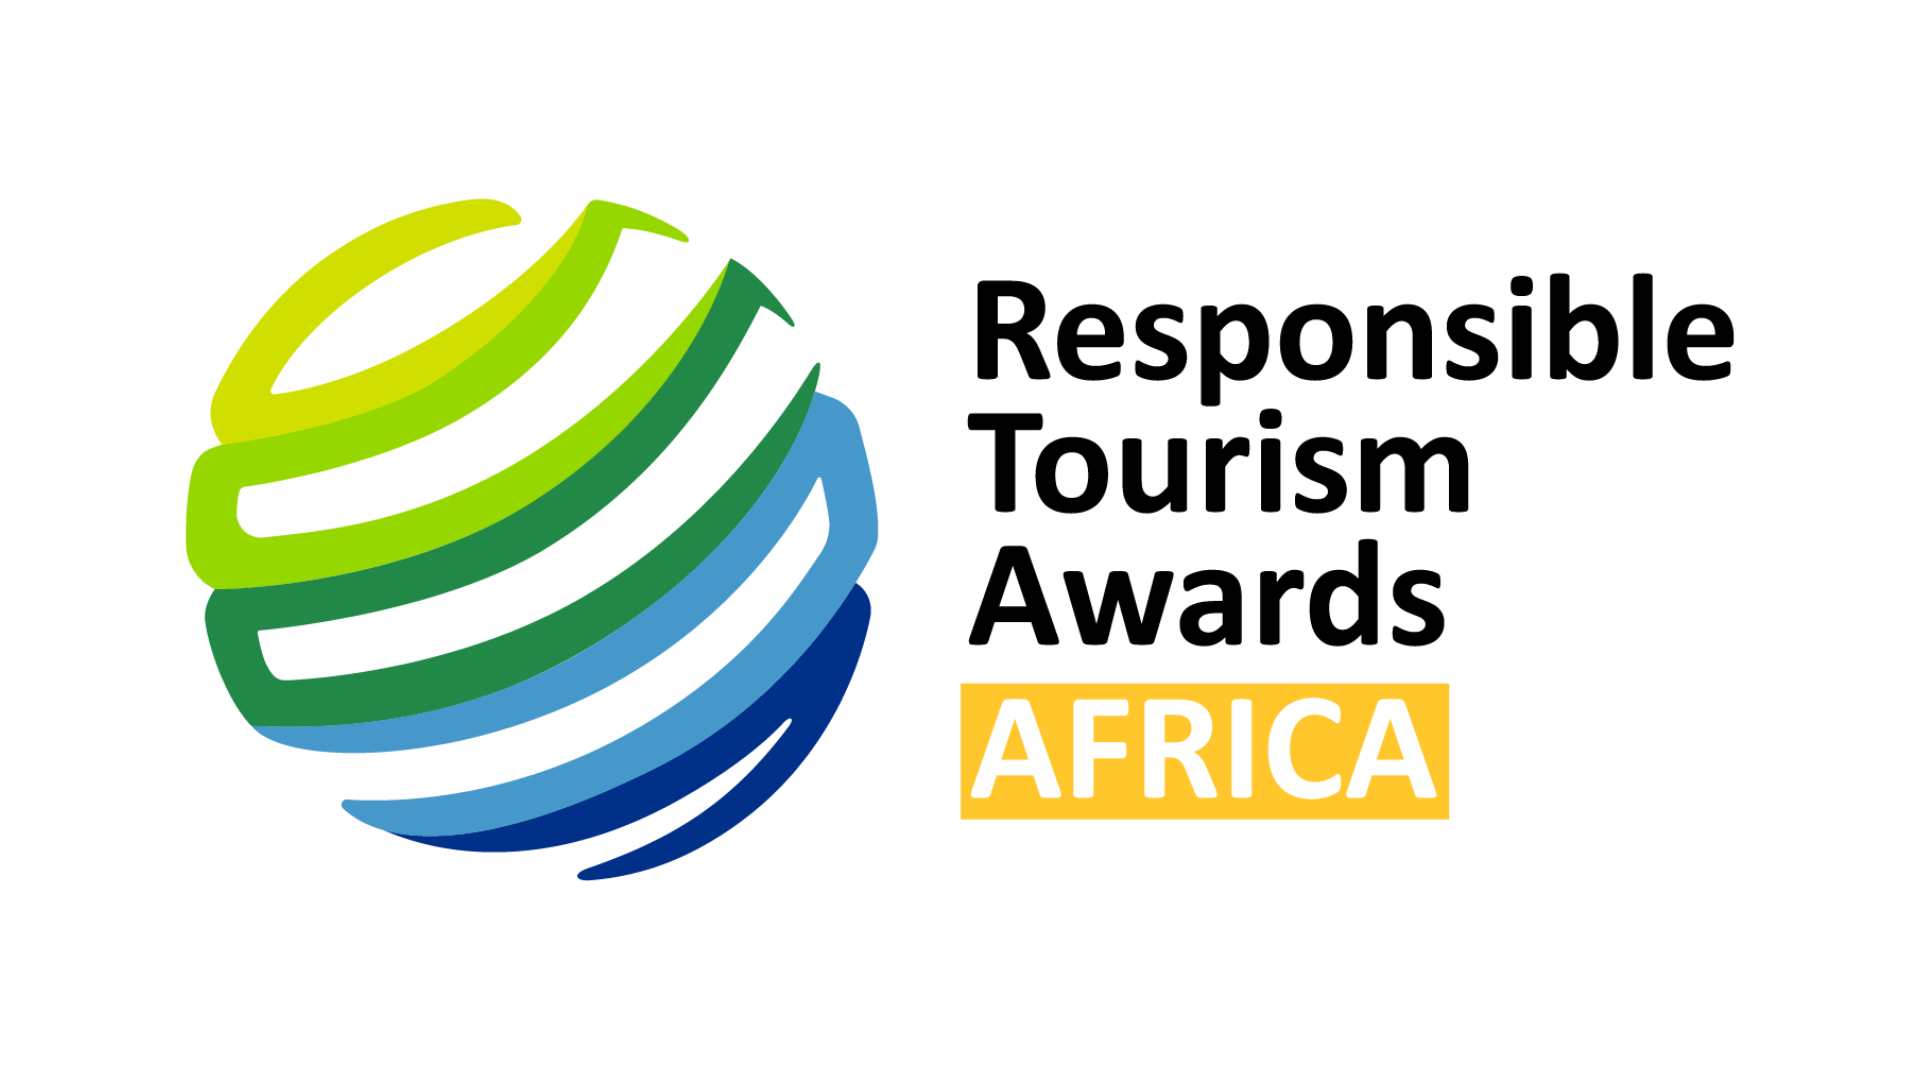 wtm responsible tourism awards